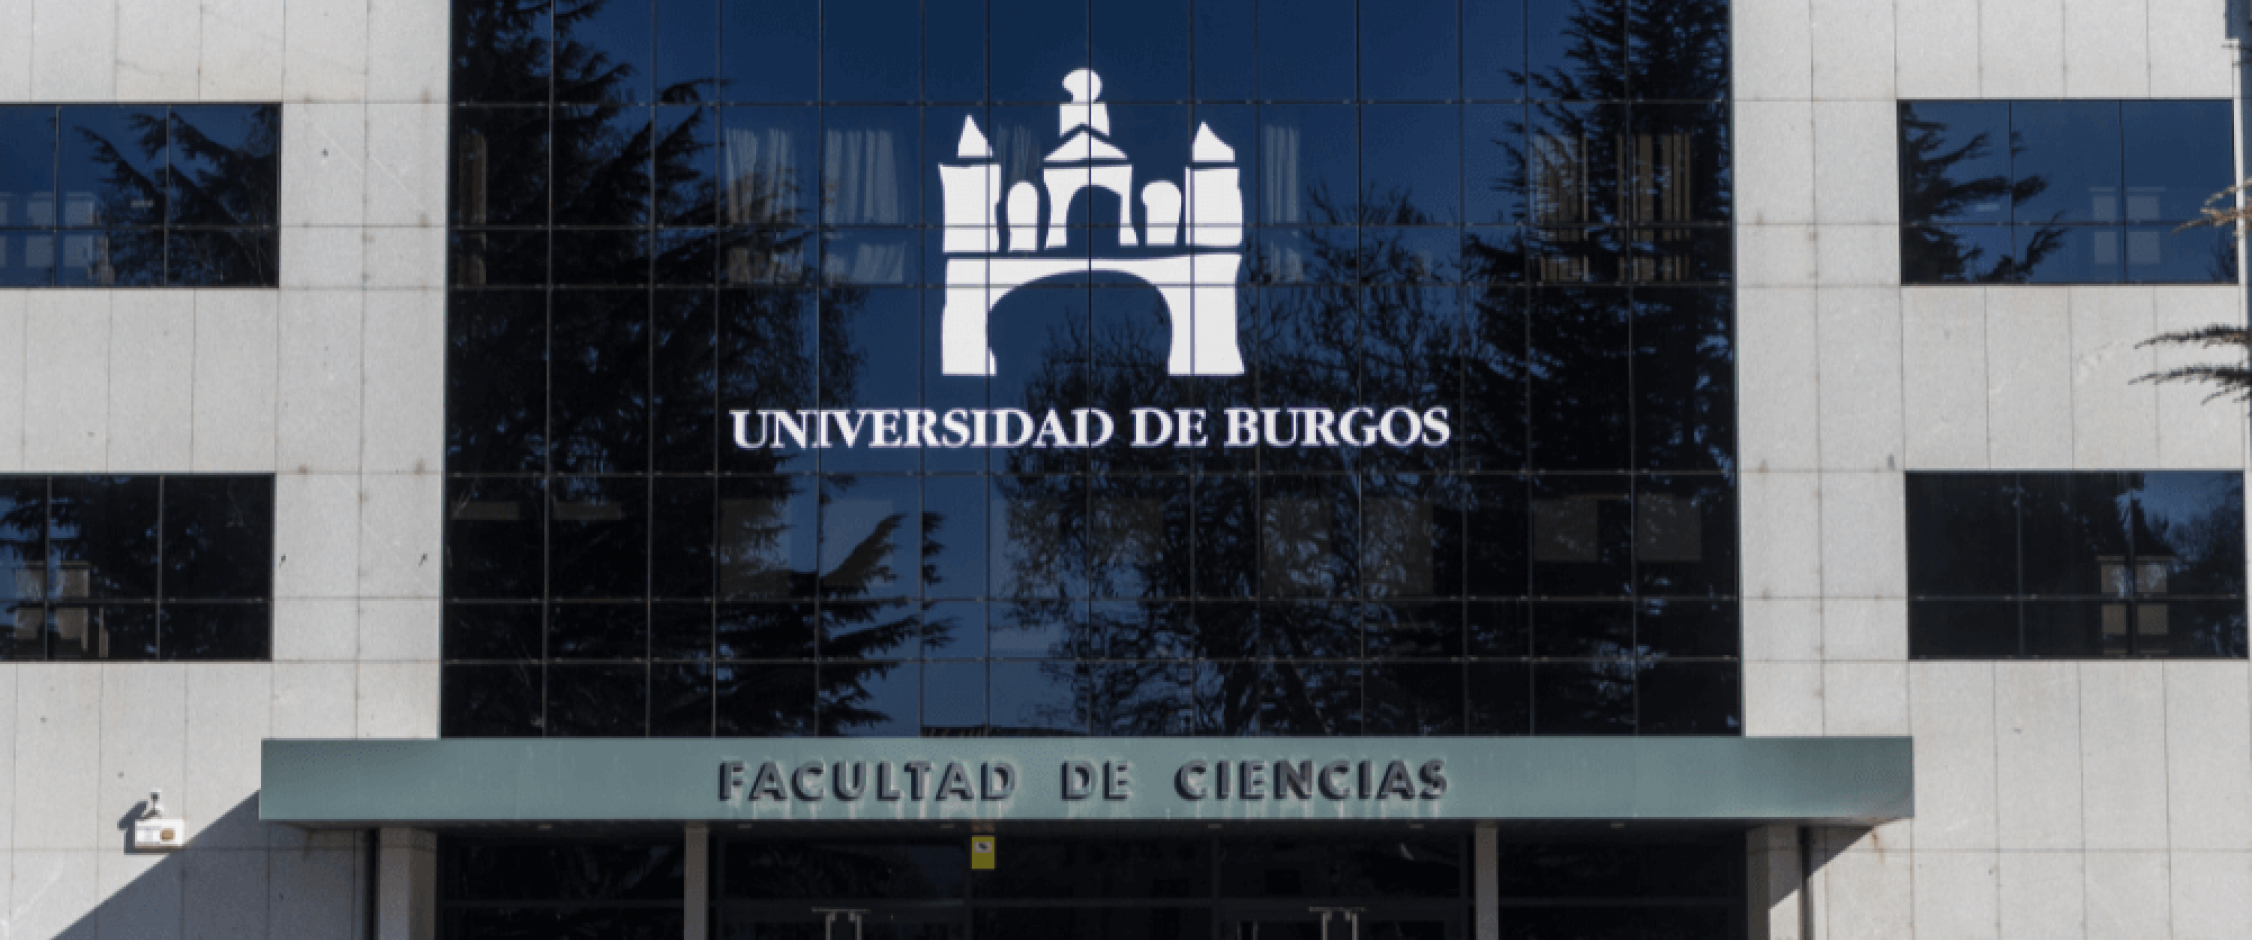 universidad-burgos-2